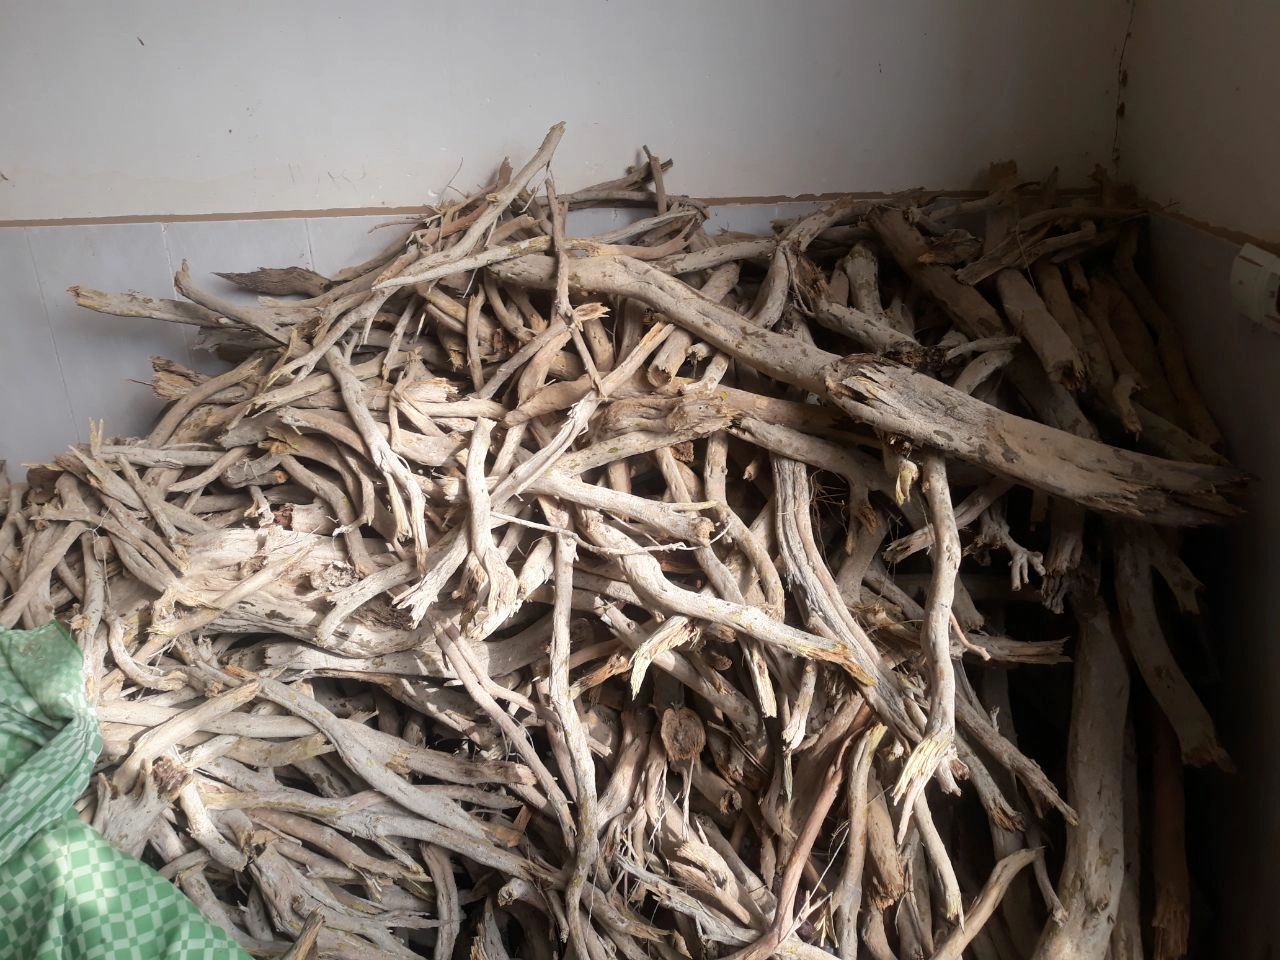 کشف بیش از ۲ تن چوب تاغ قاچاق در شهرستان سرخس